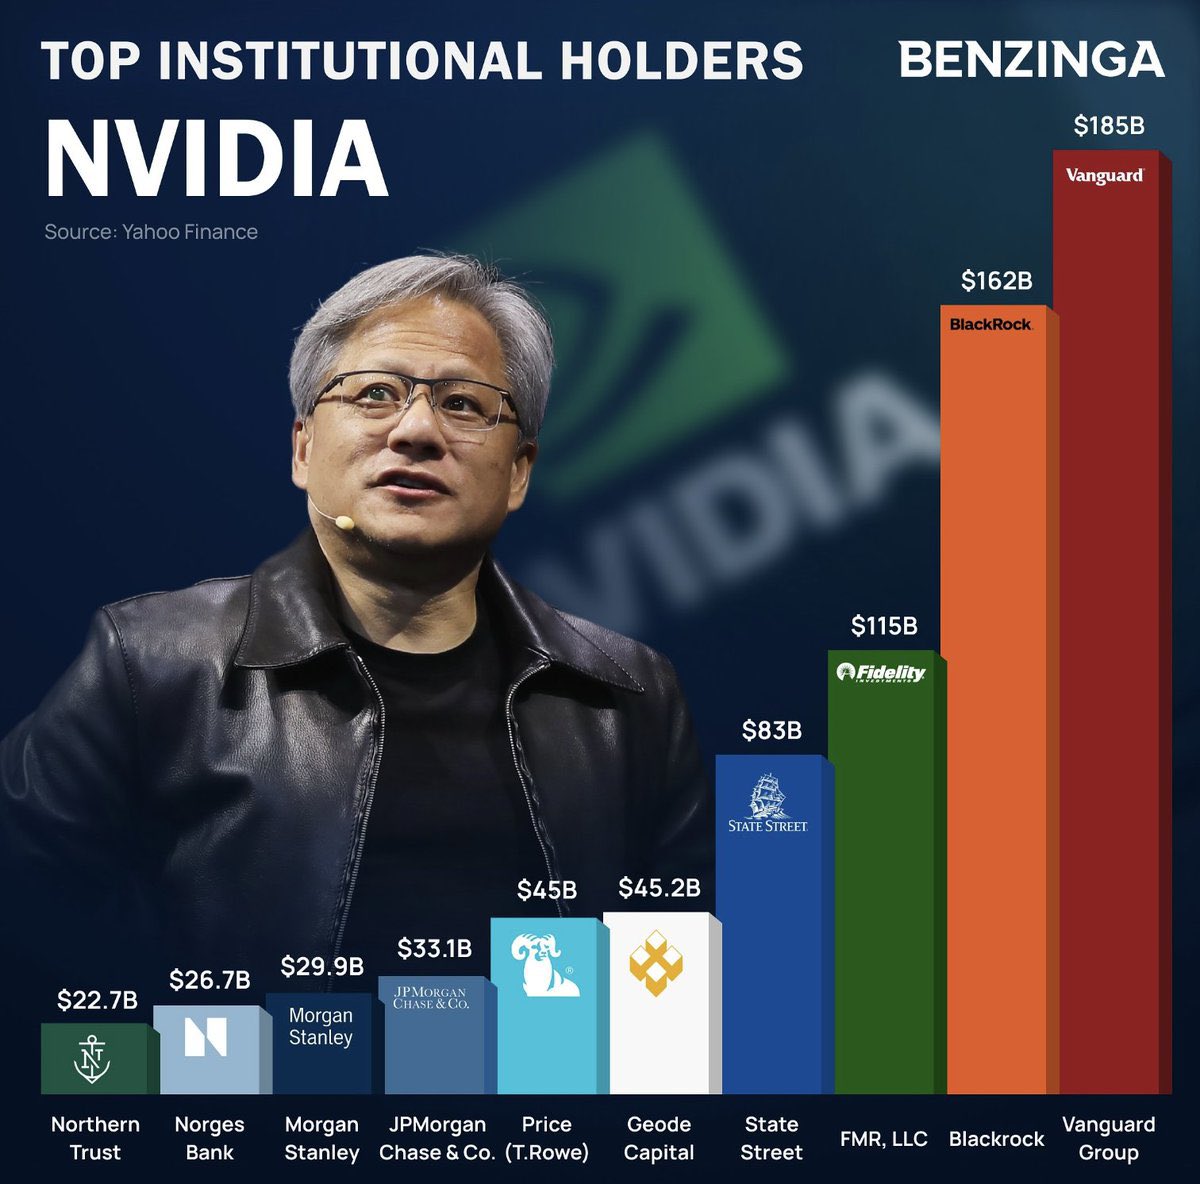 Küresel piyasalarda gündem yine #NVIDIA

Şirket Çarşamba günü ilk çeyrek bilançosunu açıklayacak. 

Bilanço öncesinde Nvidia hissesi bugün %2.5 artıda ve $948 seviyesinde. 

Kurumlardan da yukarı yönlü güncellemeler geliyor. Barclays bugün Nvidia’nın hedef fiyatını 850 dolardan